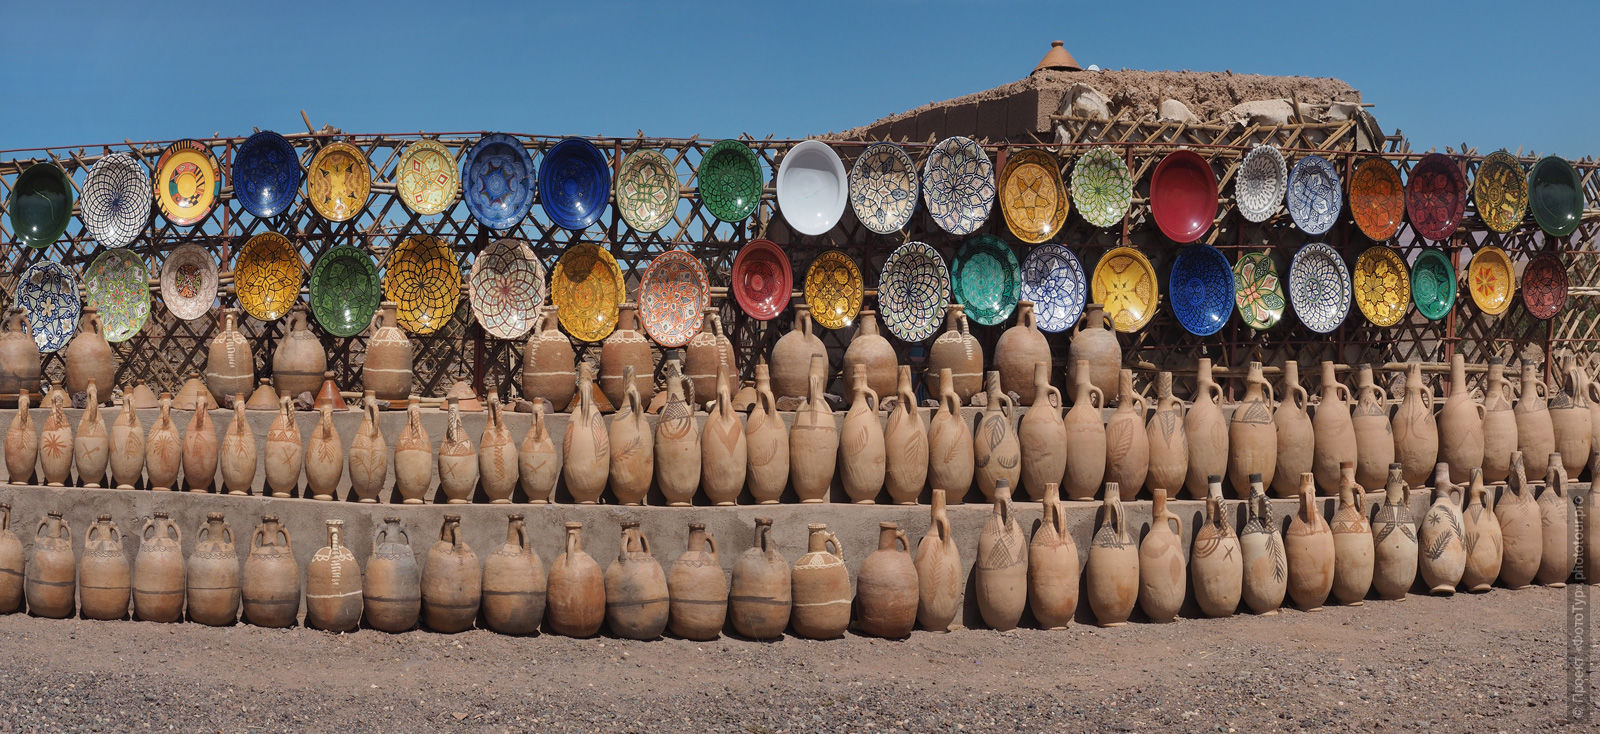 Shop ceramics, Morocco. Adventure photo tour: medina, cascades, sands and ports of Morocco, April 4 - 17, 2020.